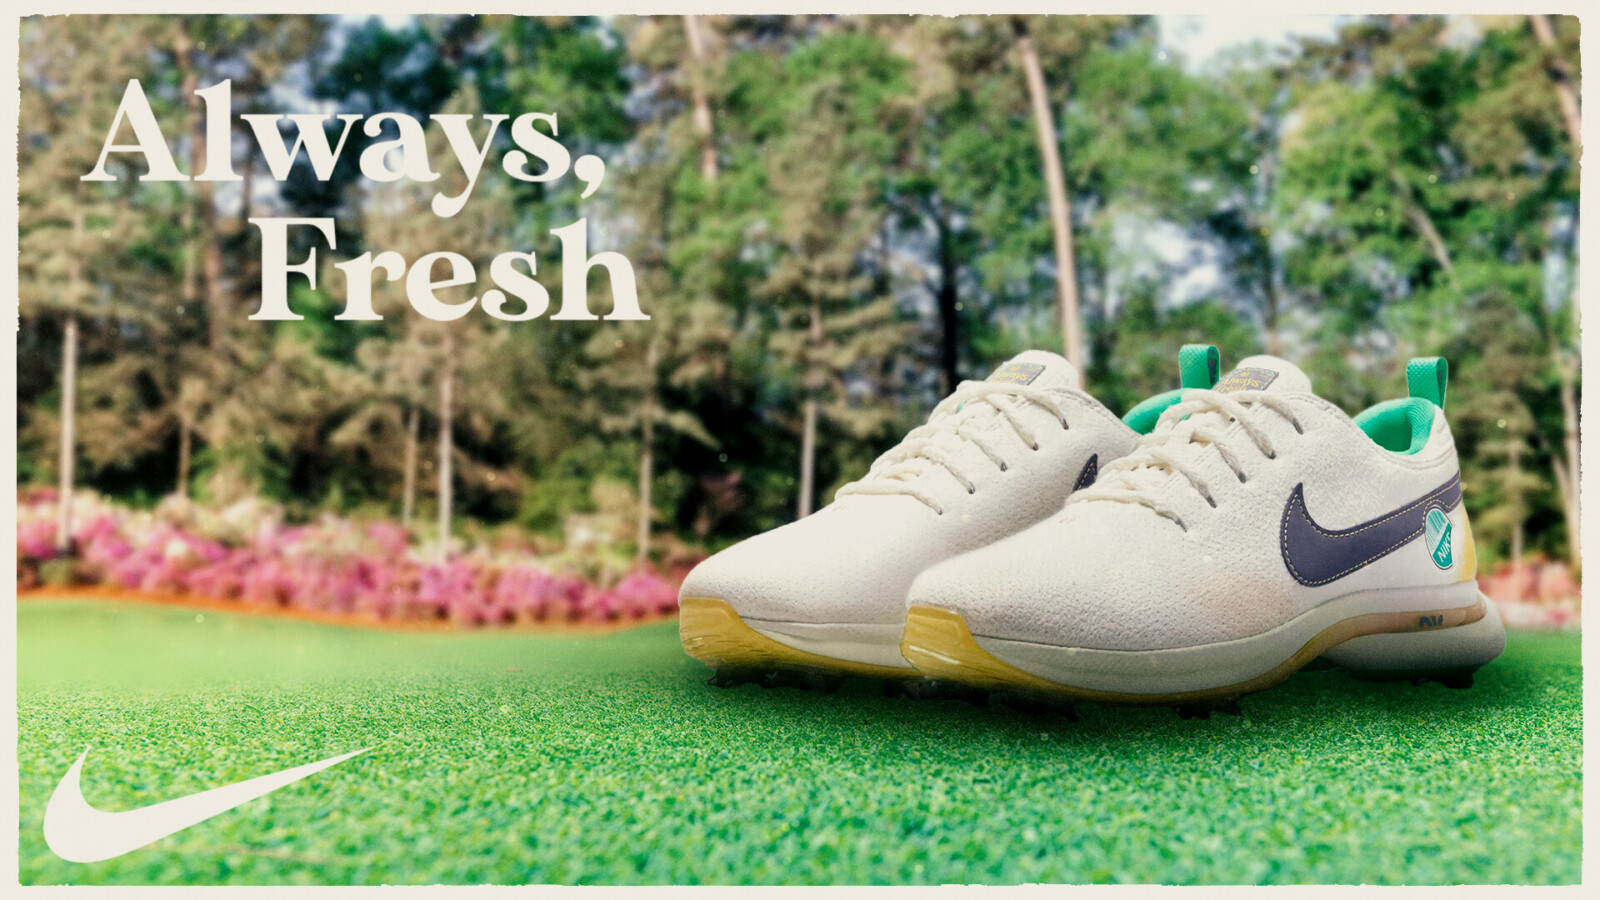 Nike – Always, Fresh